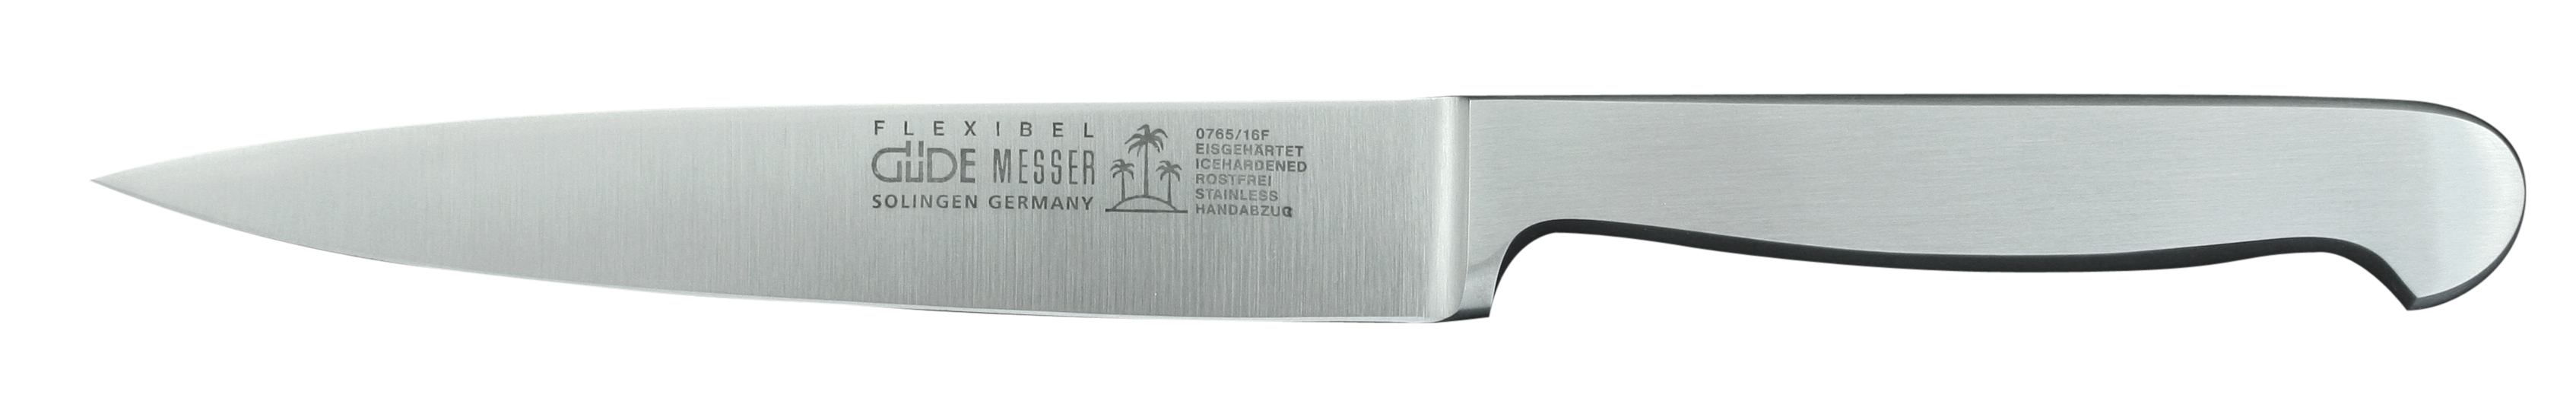 Güde Kappa Filiermesser 16 cm flexibel - Klinge und Griff aus CVM-Stahl